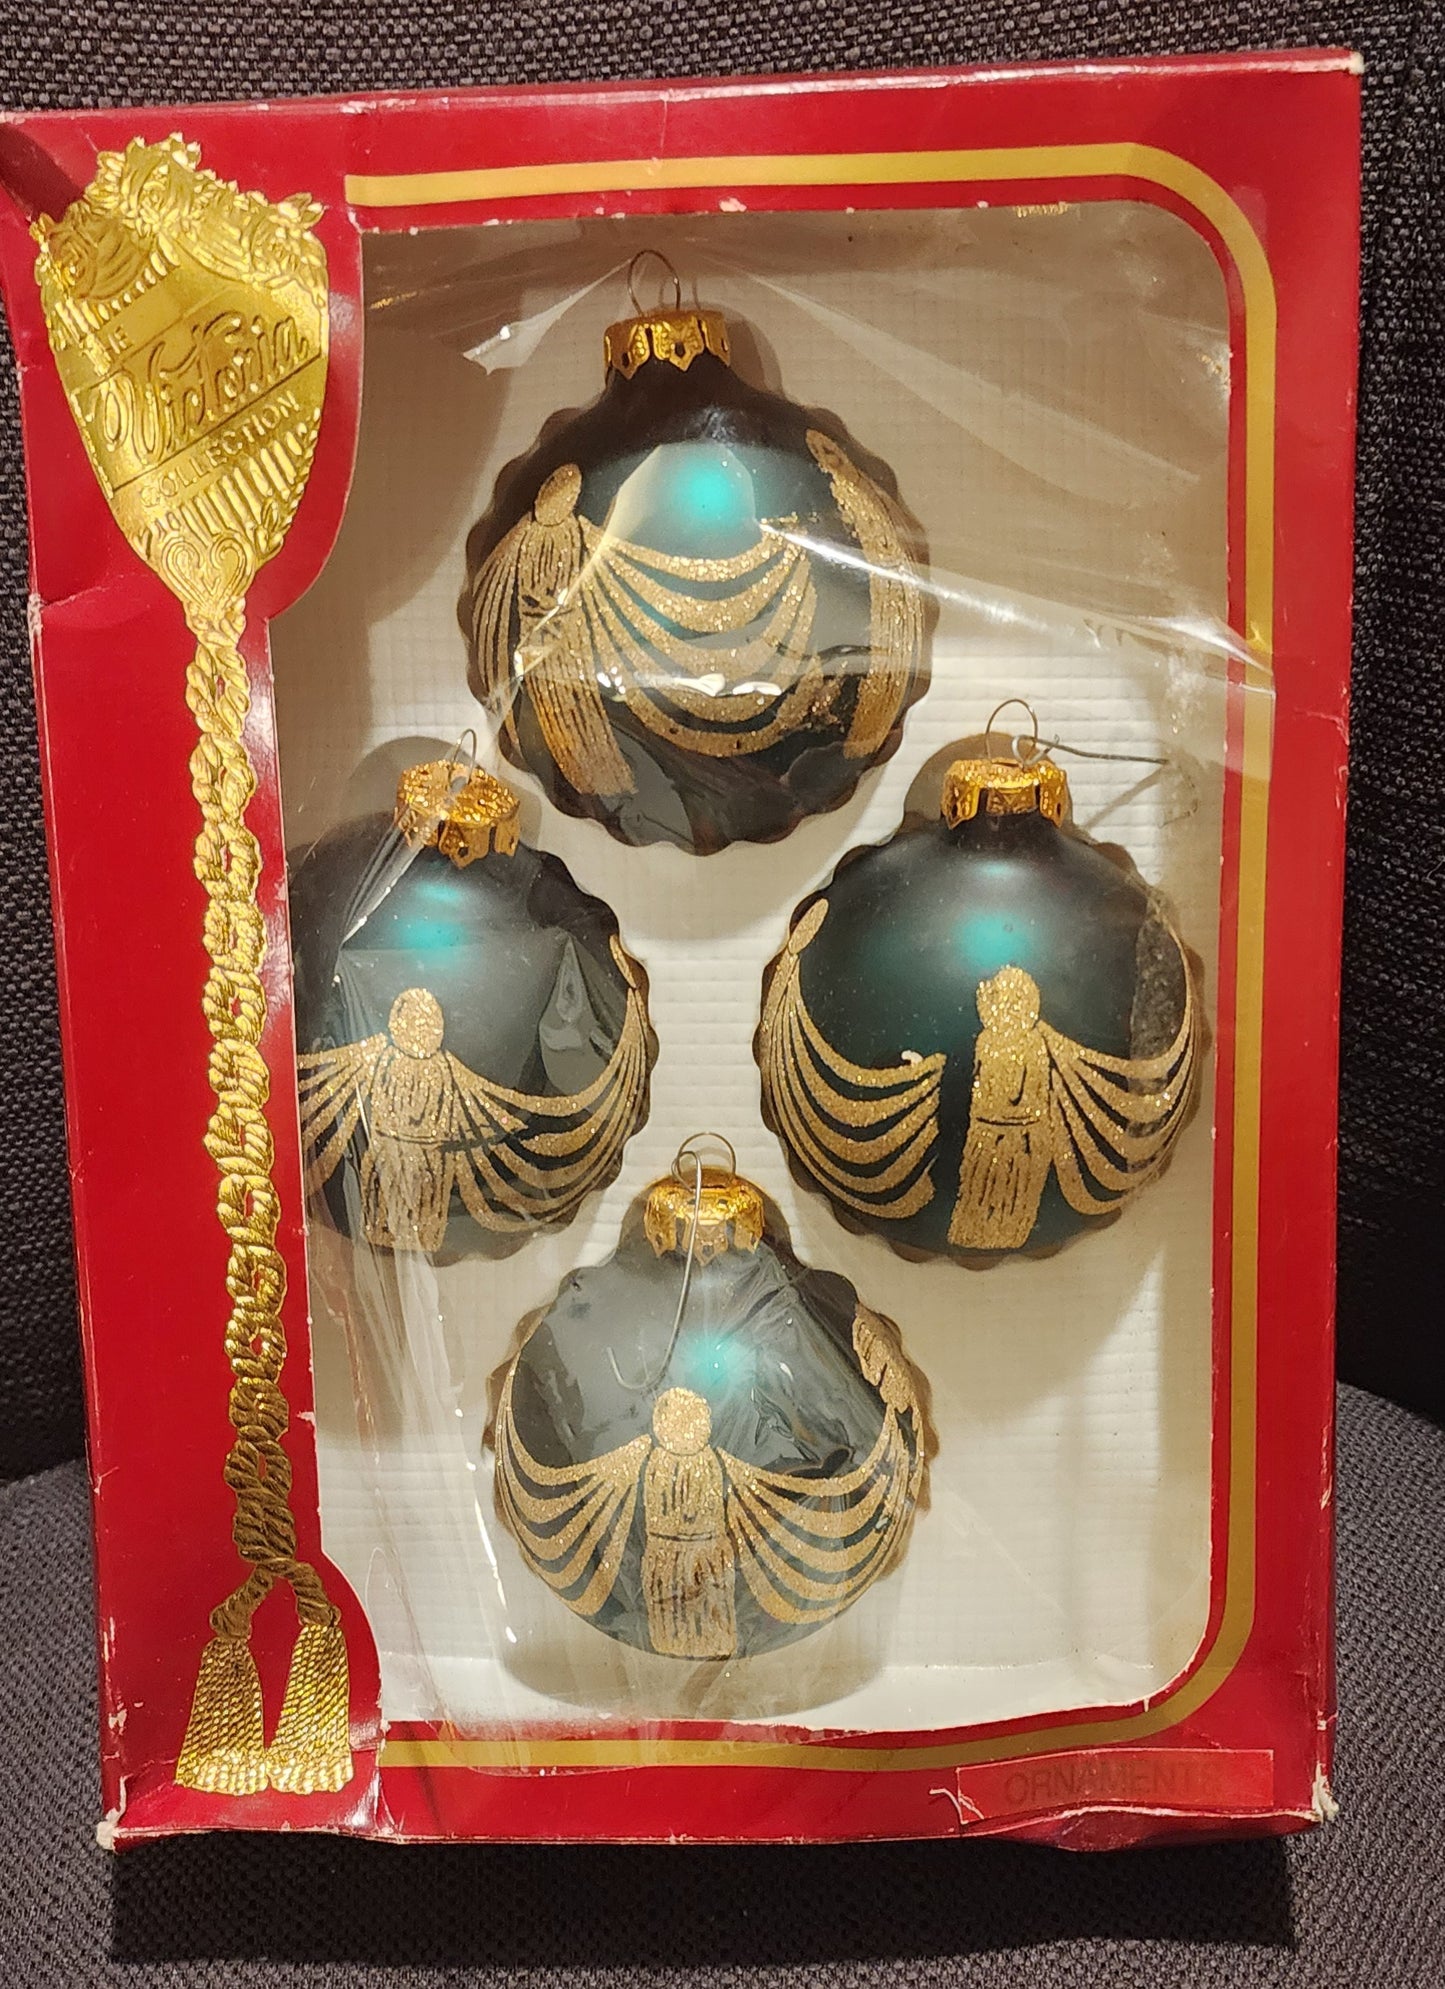 Vntg Box of Victoria USA Ornaments